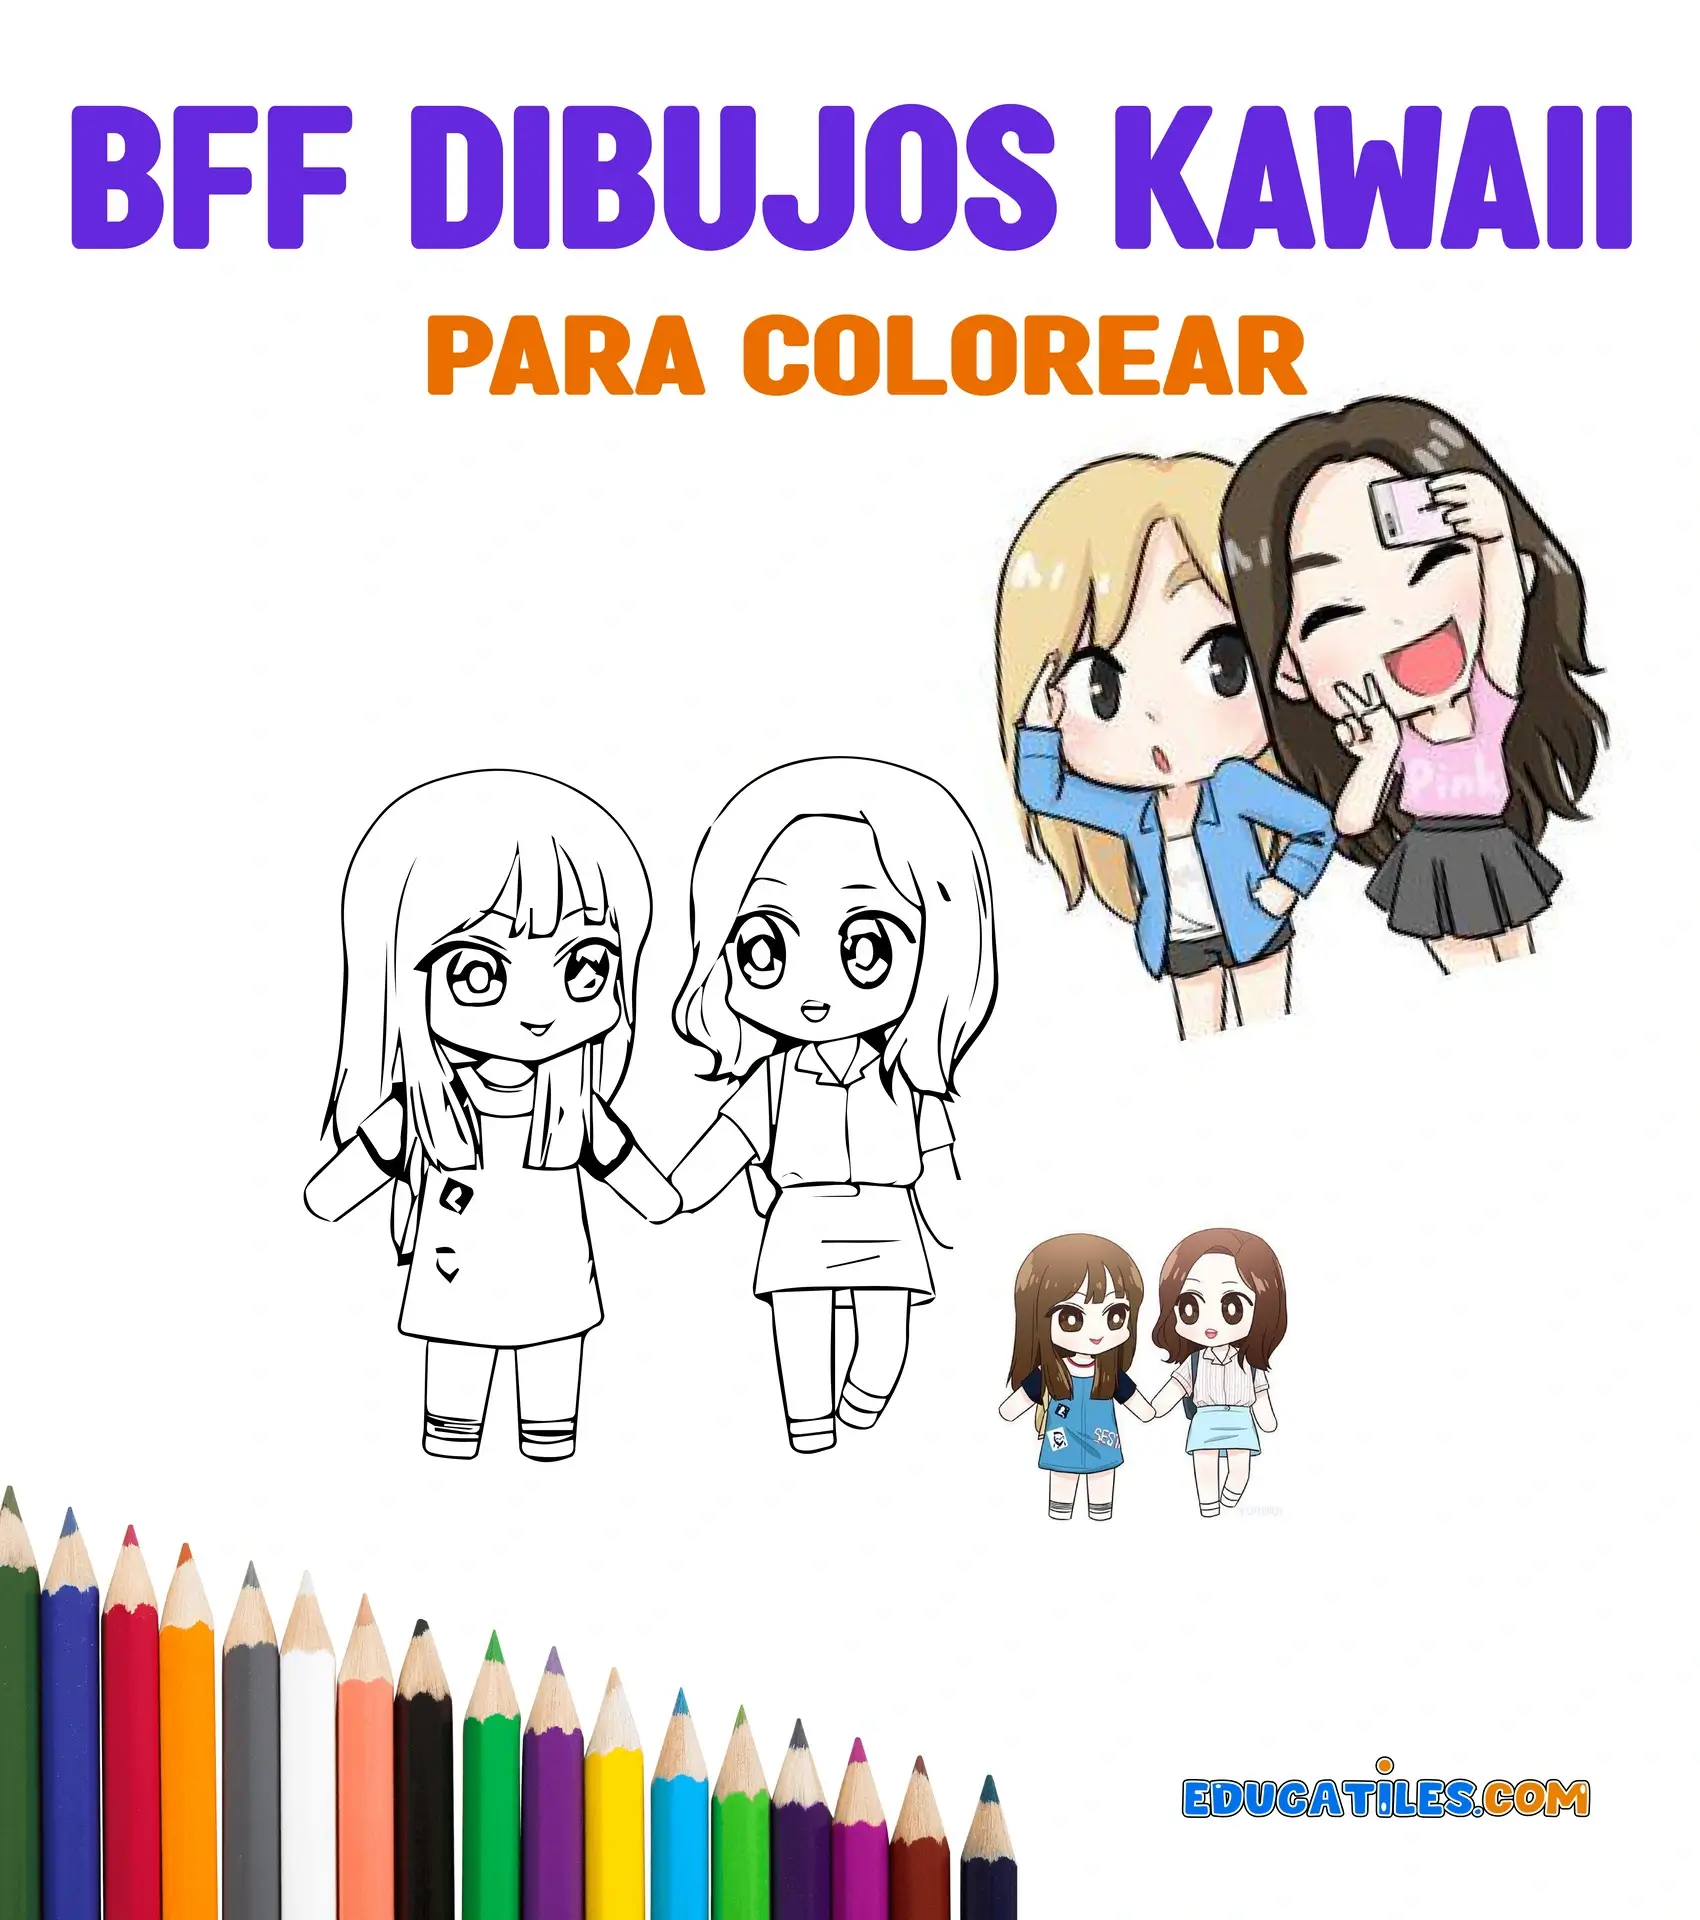 Bff Dibujos Kawaii para colorear - Cuentos cortos, Recursos de Educación,  Salud infantil, Nutrición pediátrica y Diversión para niños